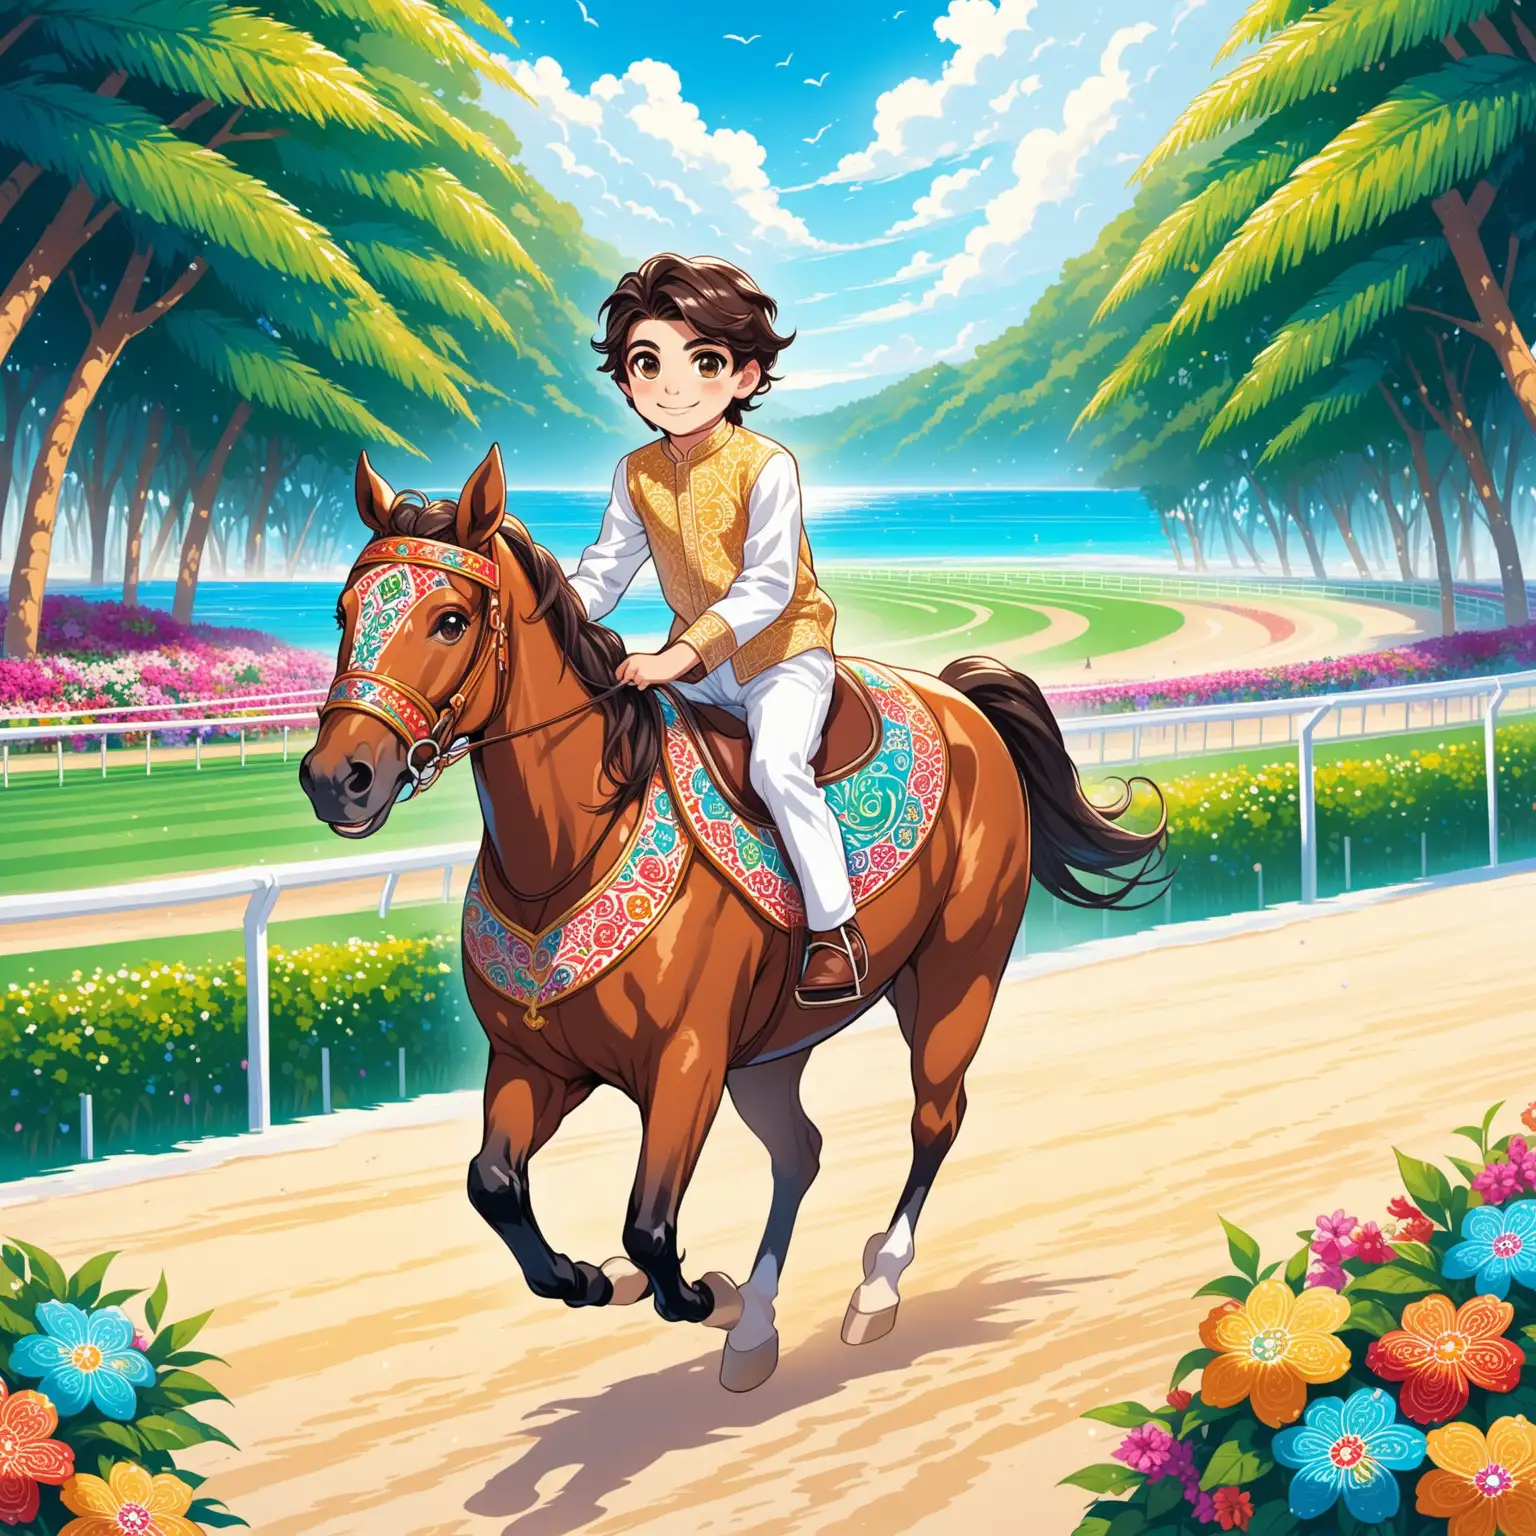 Persian Boy Riding Horse at HighTech Beach Racing Field